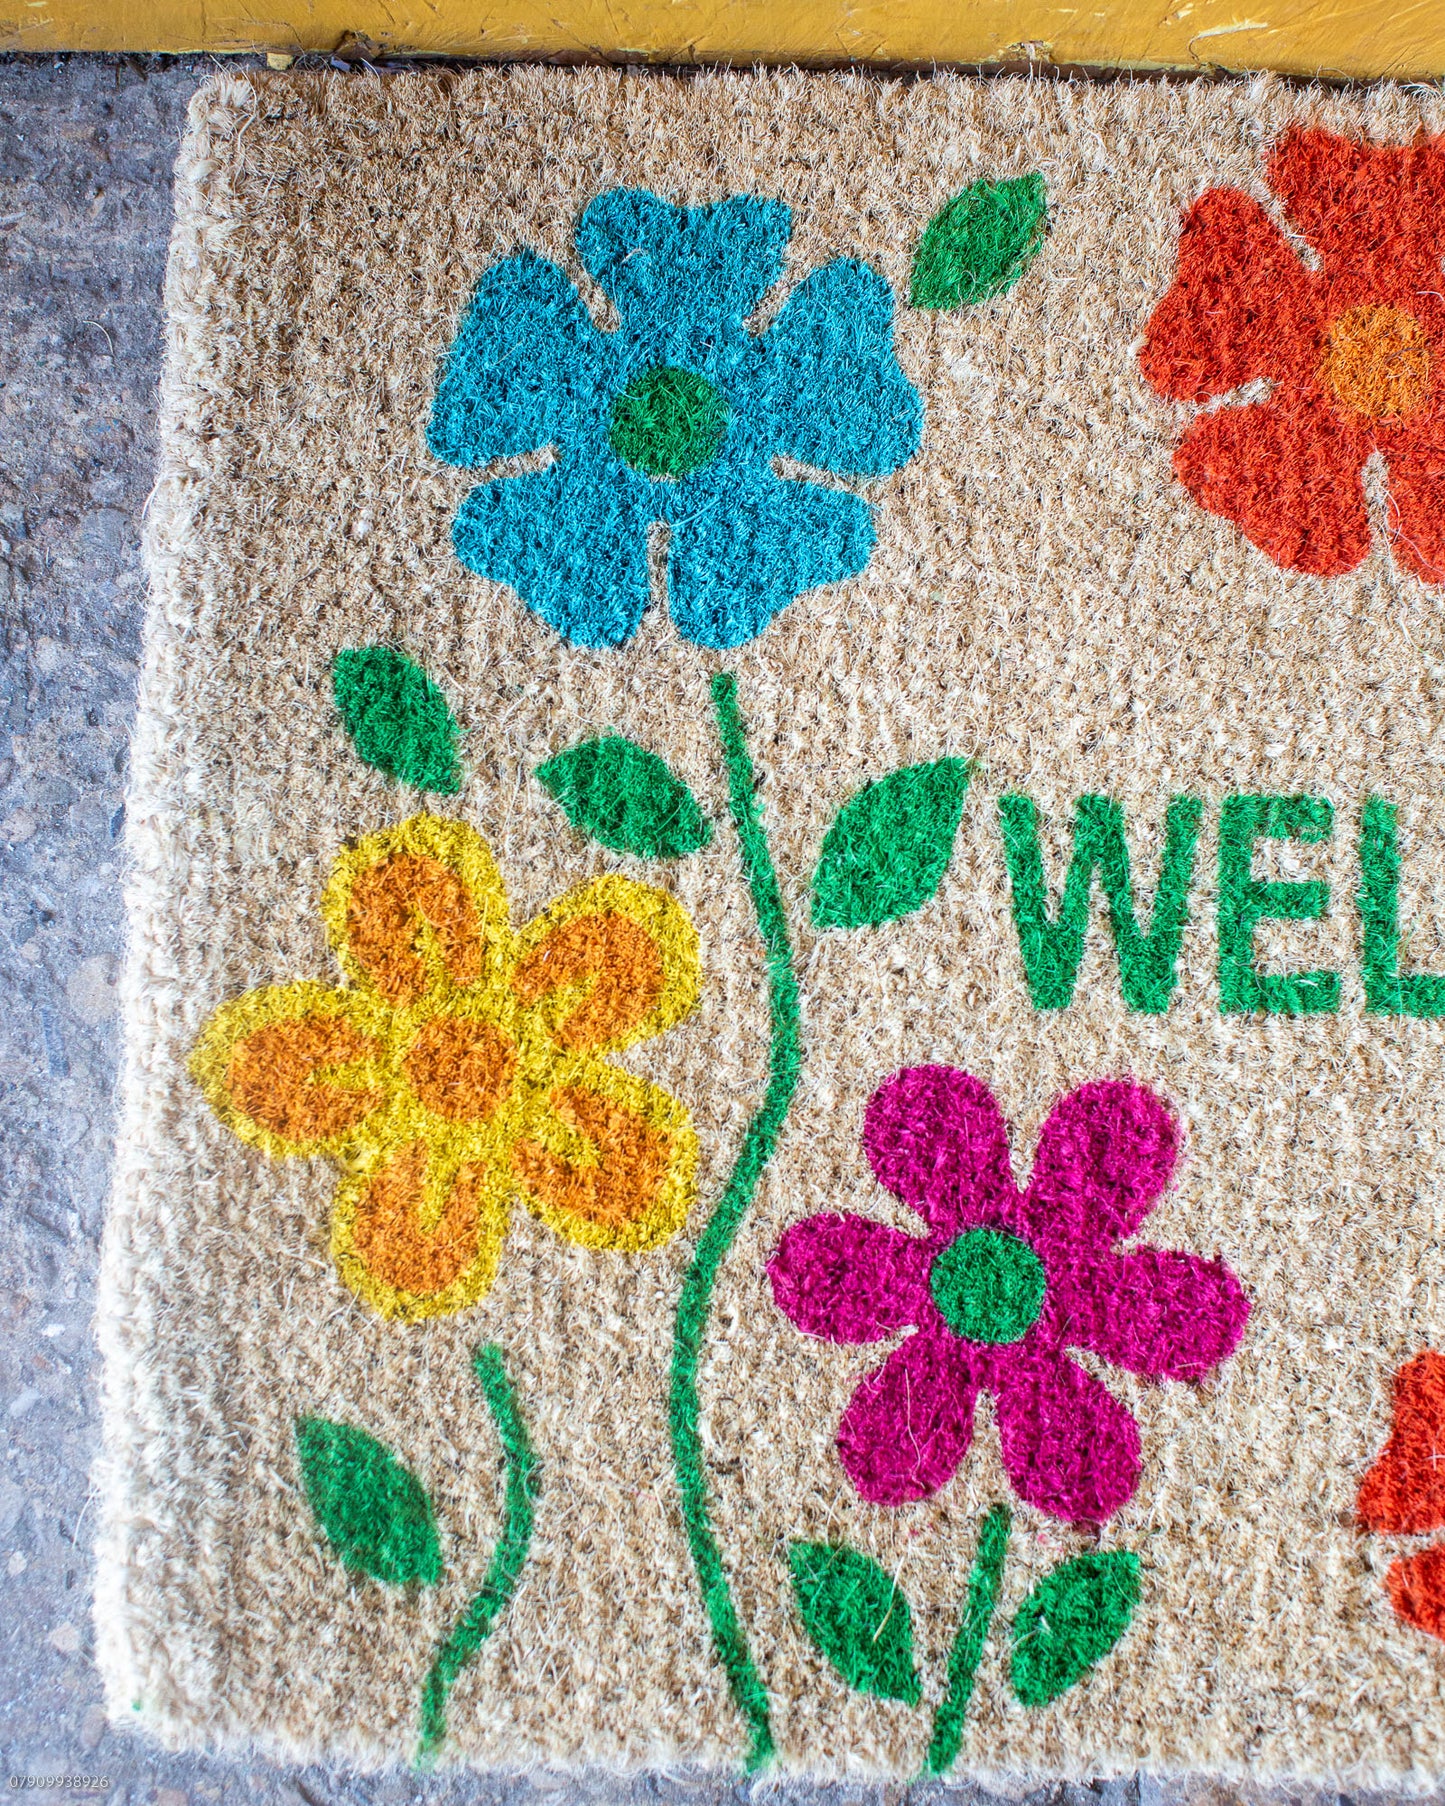 Floral Welcome Doormat